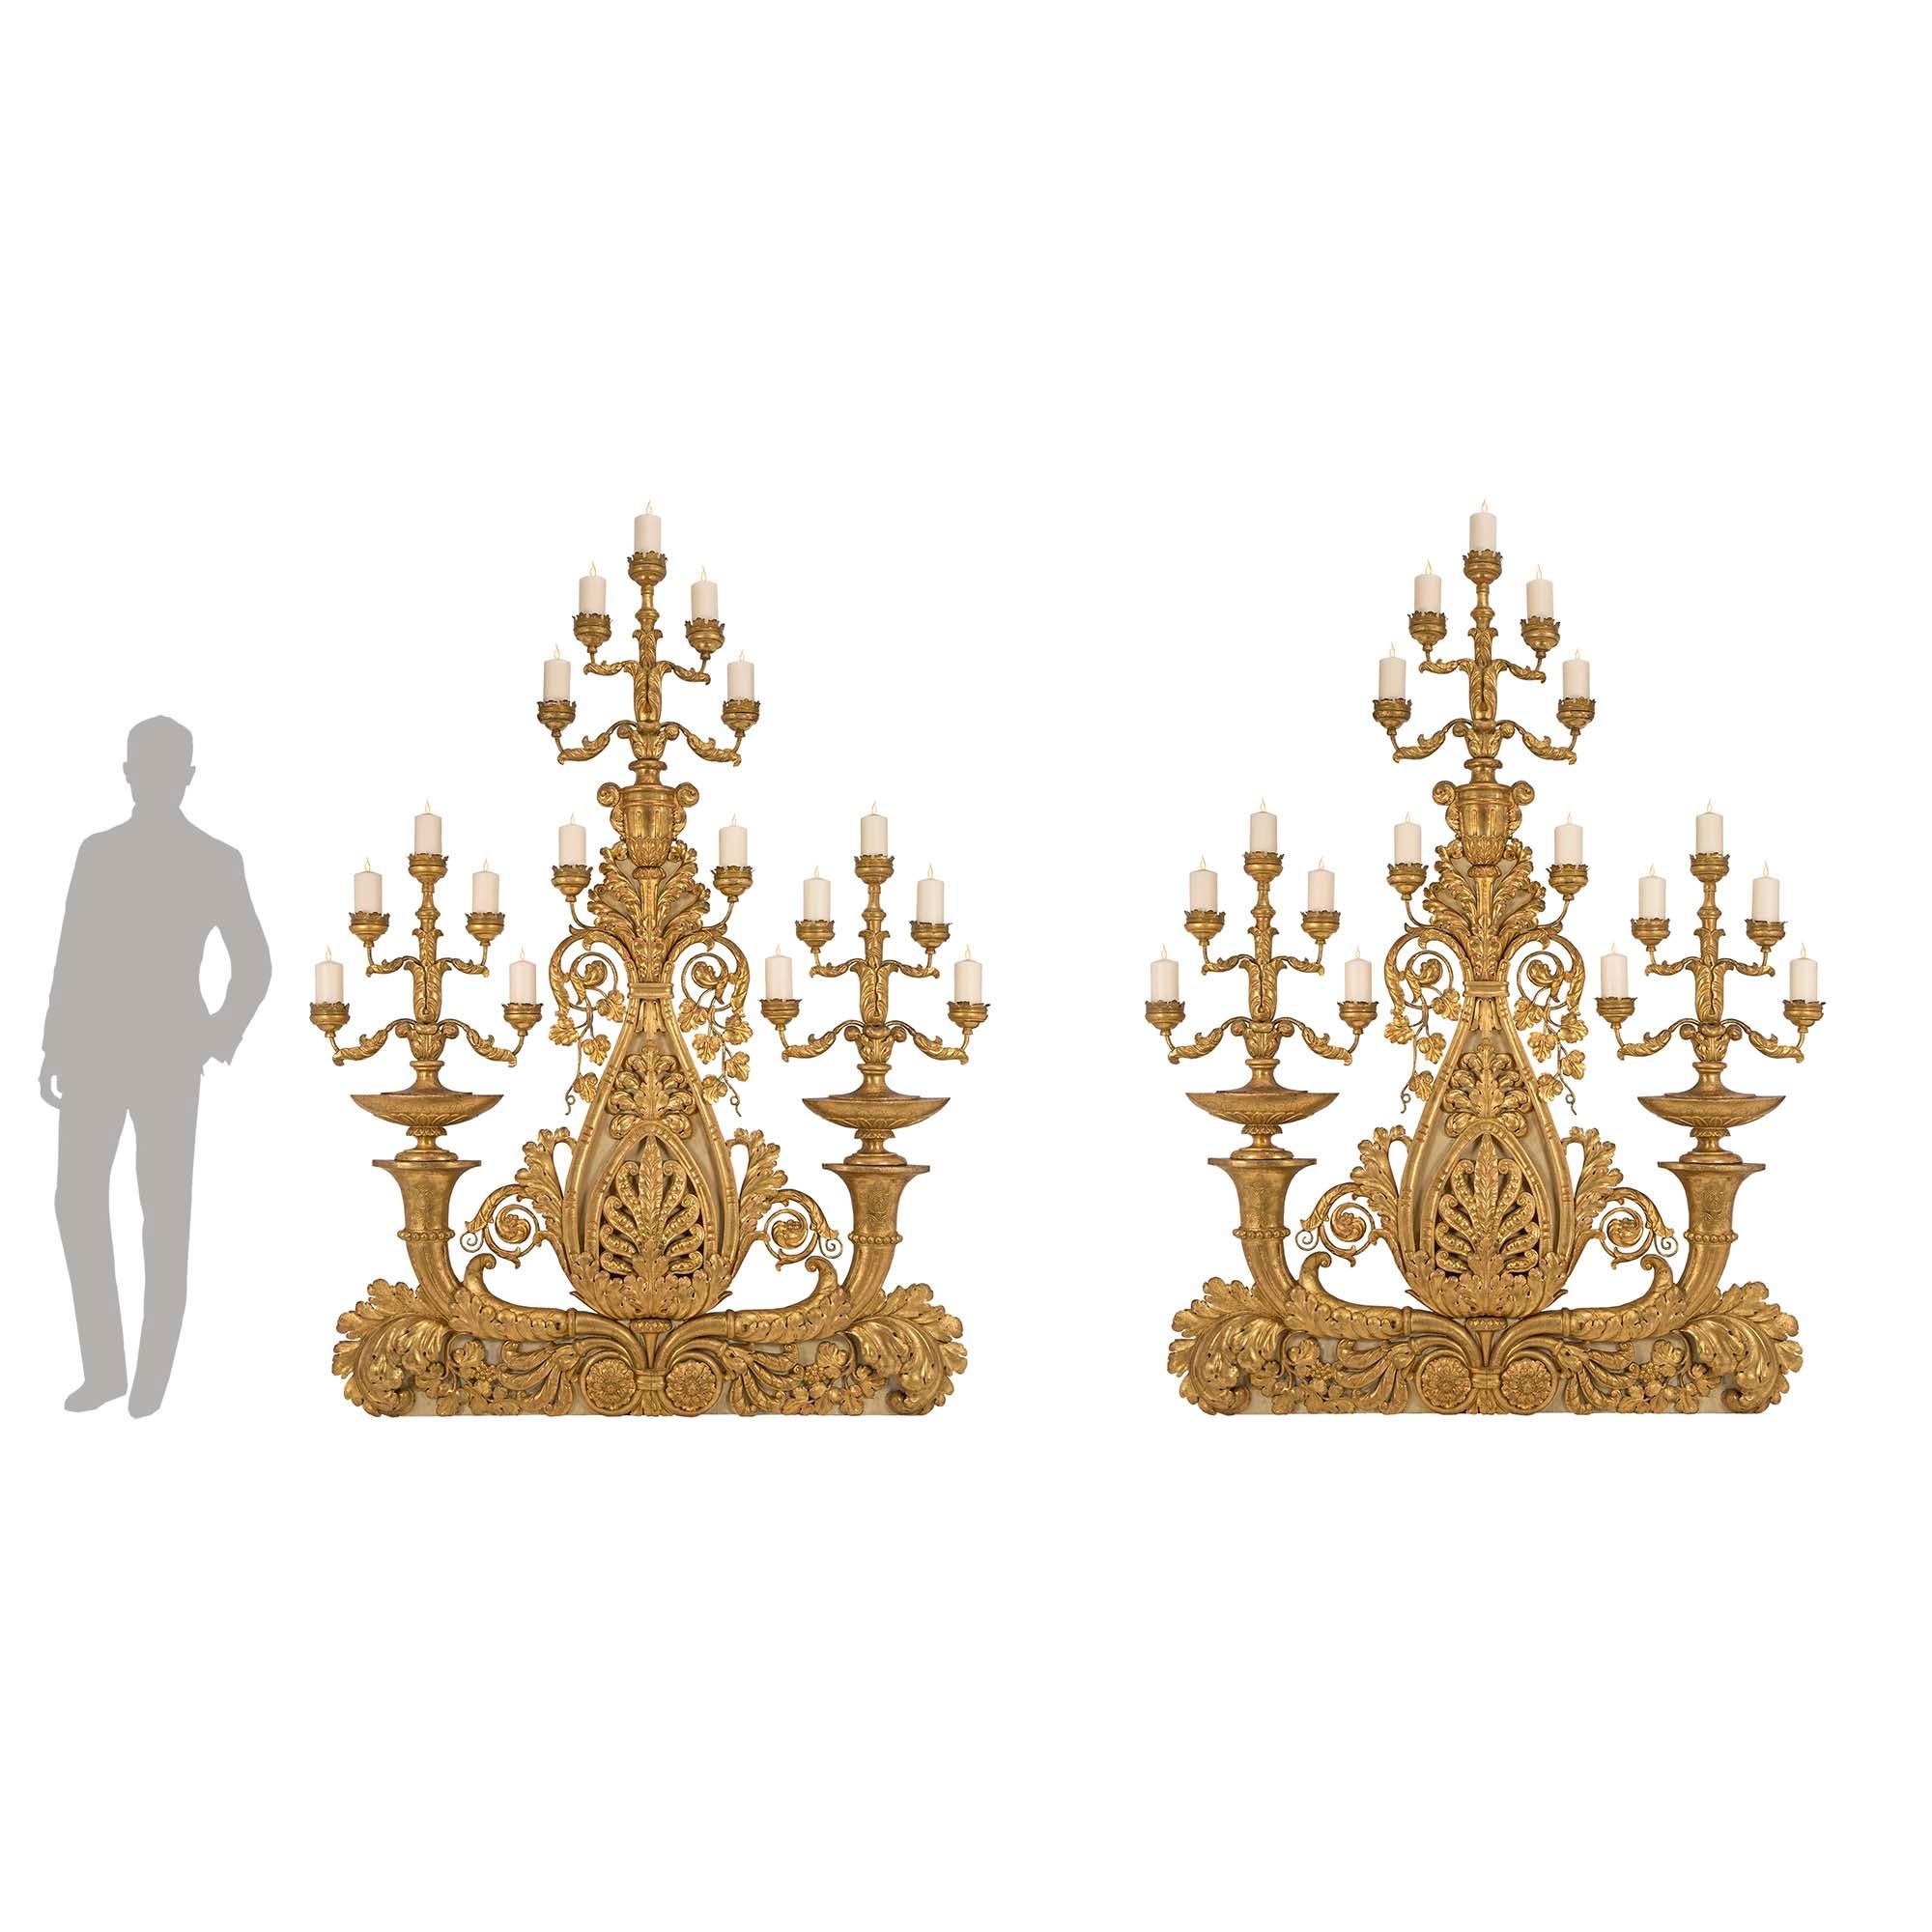 Une paire de candélabres monumentaux italiens du milieu du 18e siècle en bois doré et métal doré, en provenance de Toscane, étonnante et extrêmement unique. Chaque candélabre de grande taille repose sur une plinthe patinée décorée d'opulentes